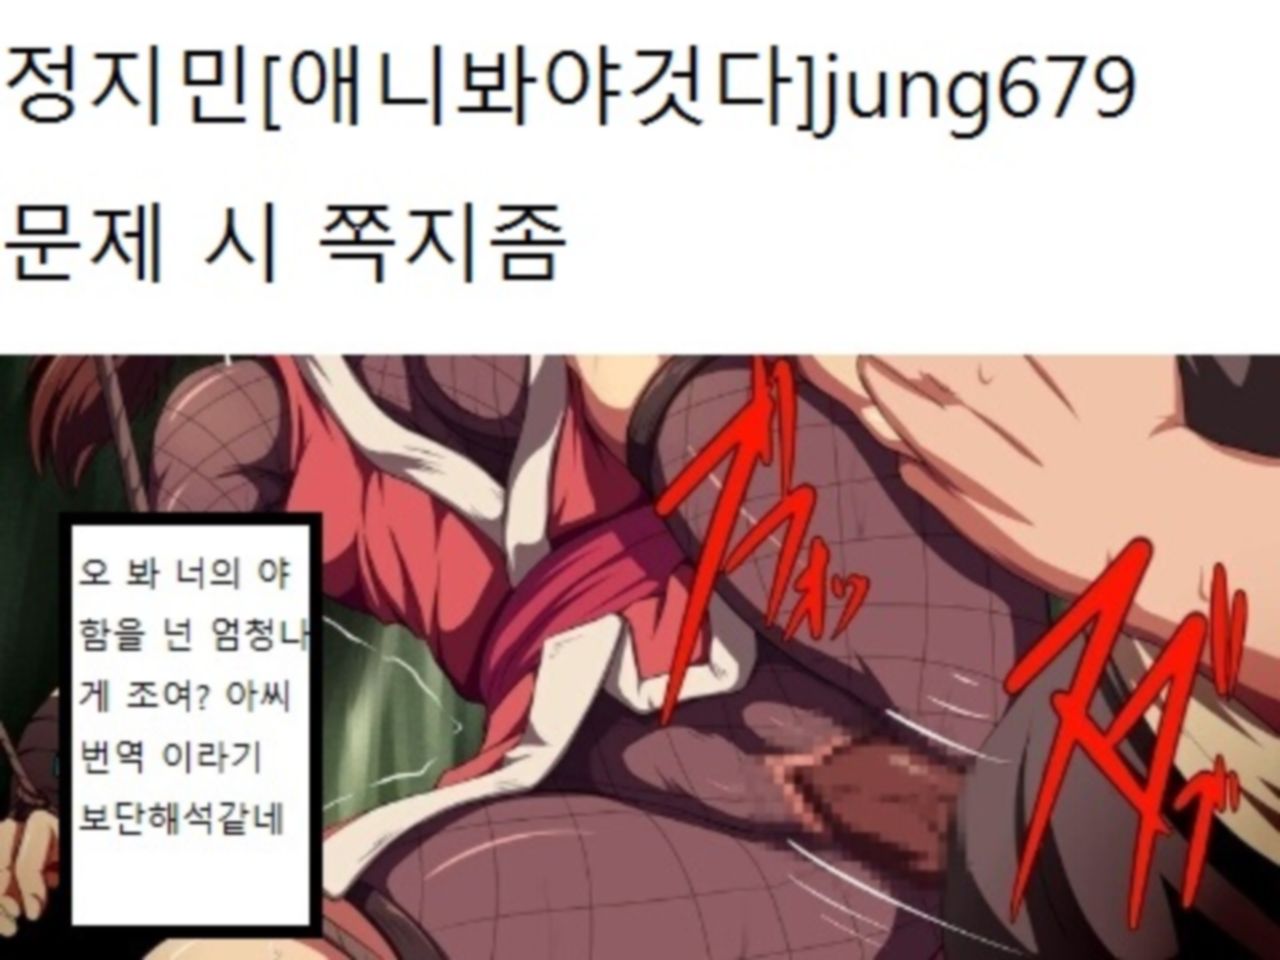 Being raped by Ninja [KOREAN] 